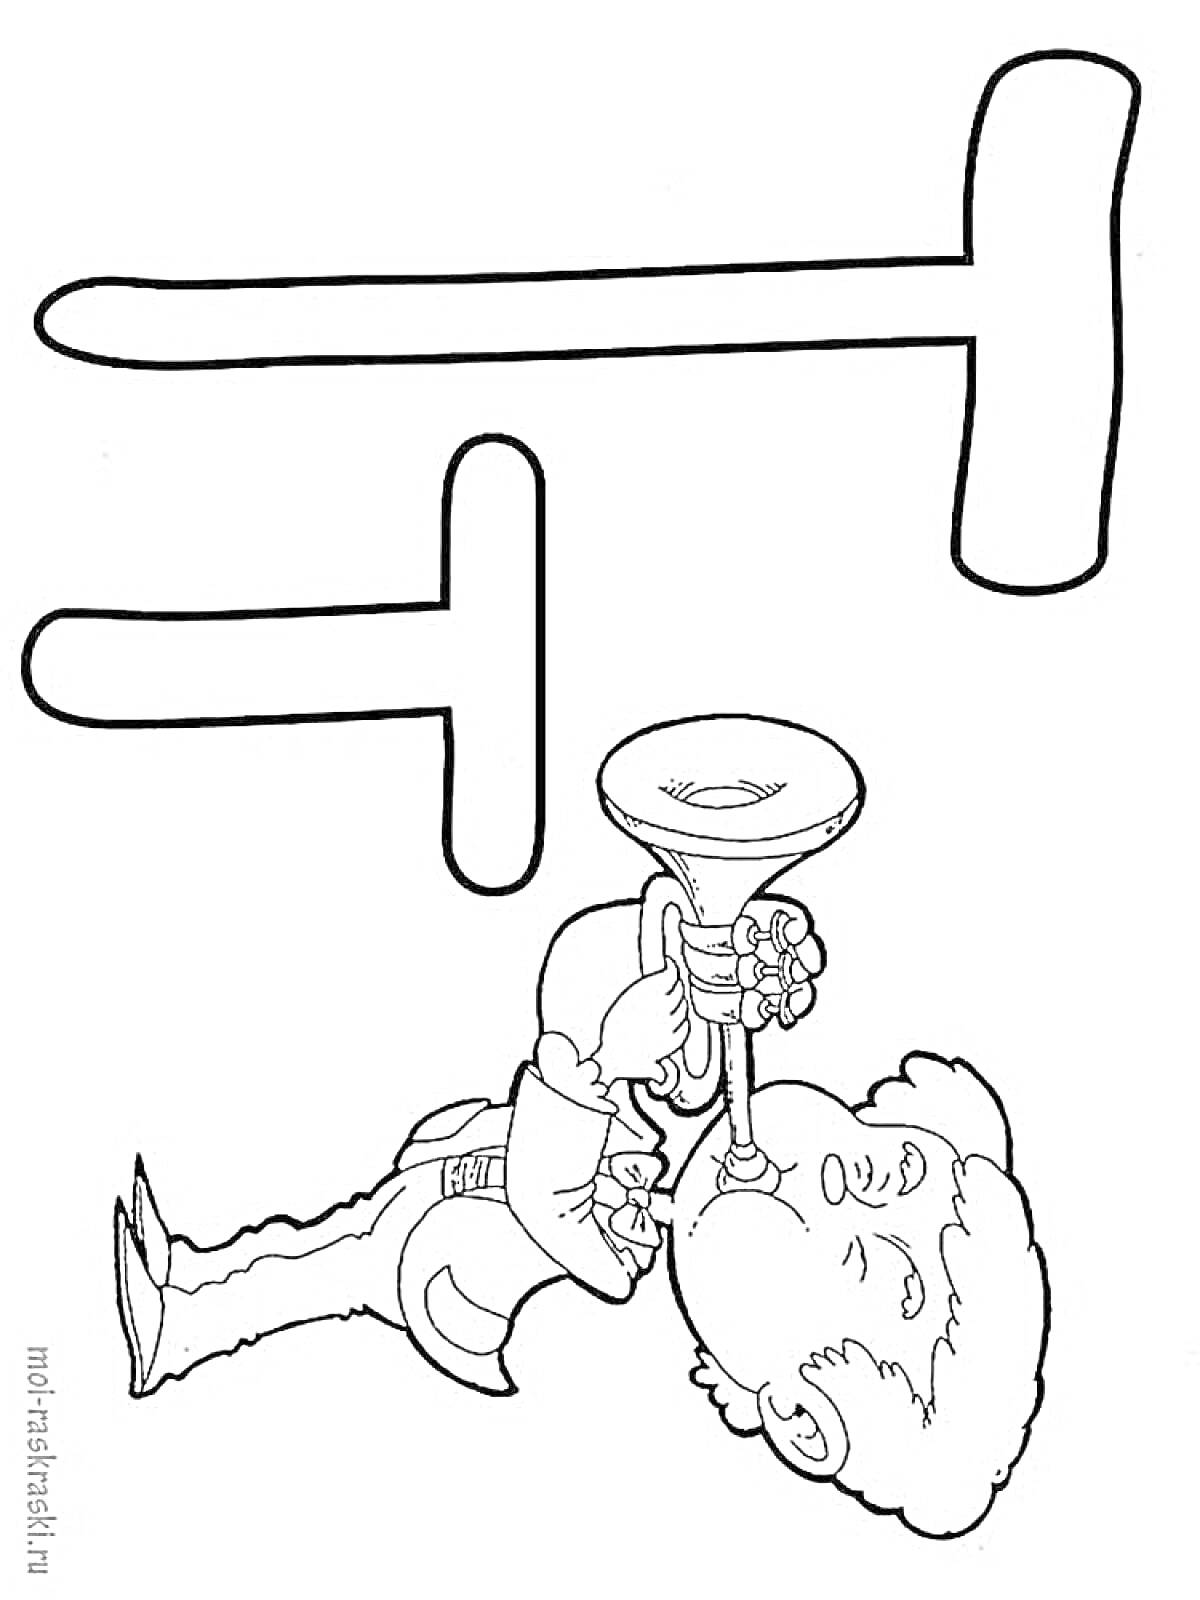 Раскраска Буквы Т и ребёнок, играющий на трубе